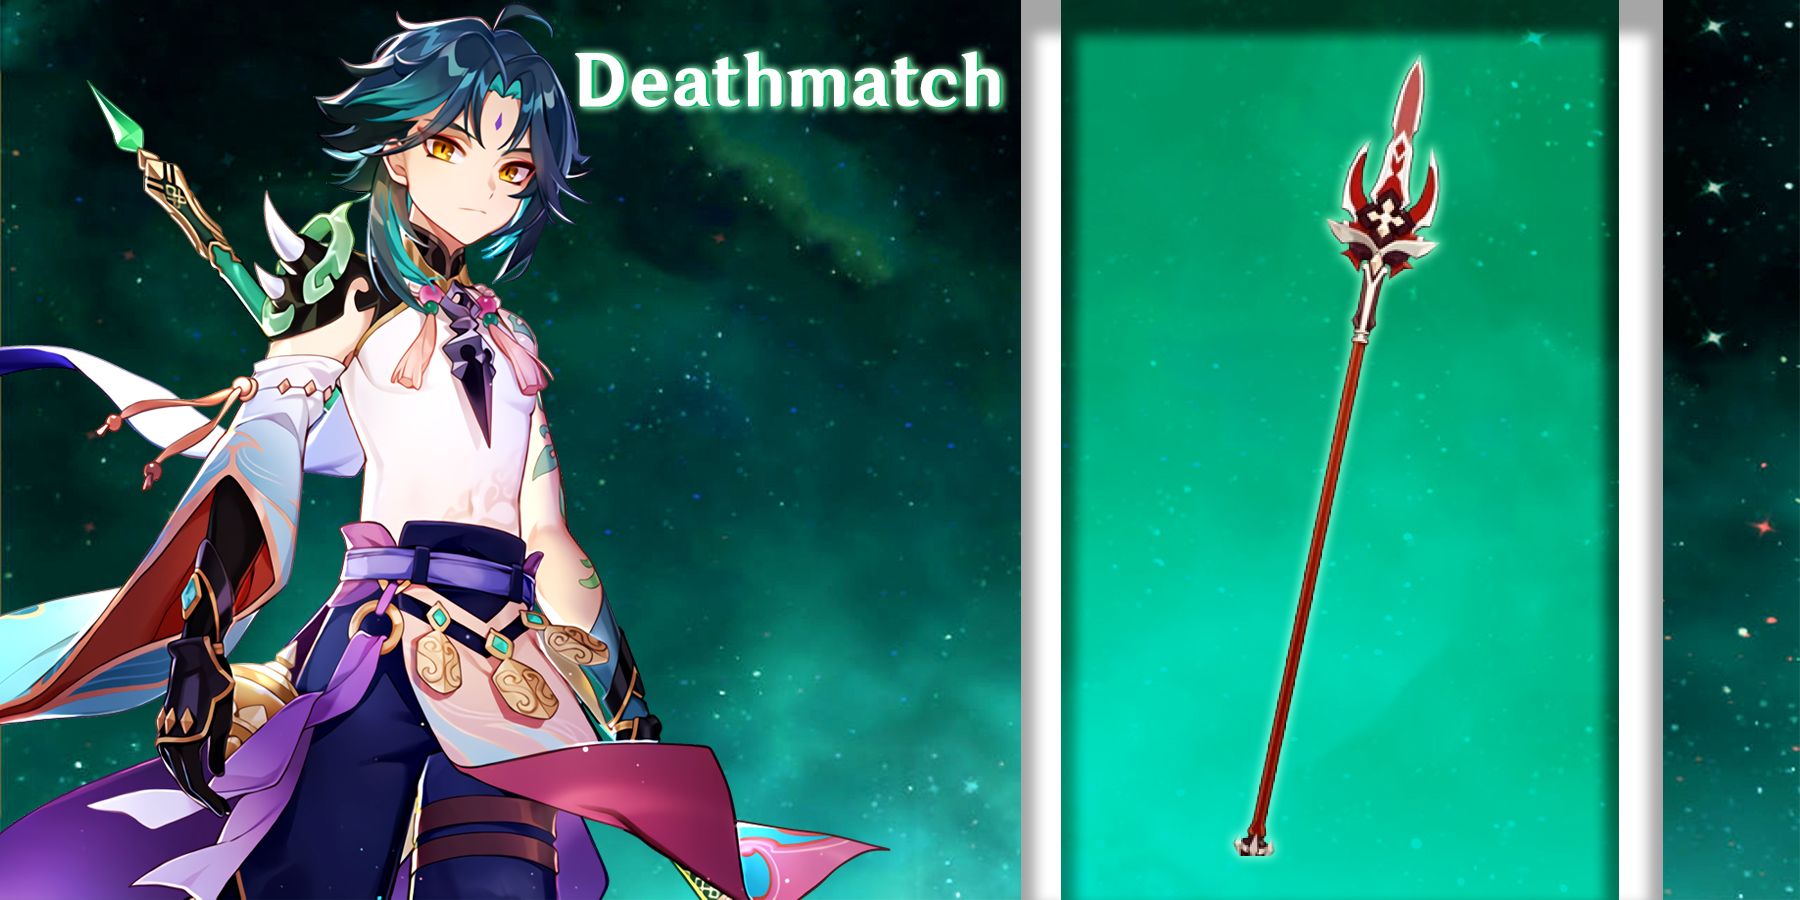 xiao using deathmatch in genshin impact